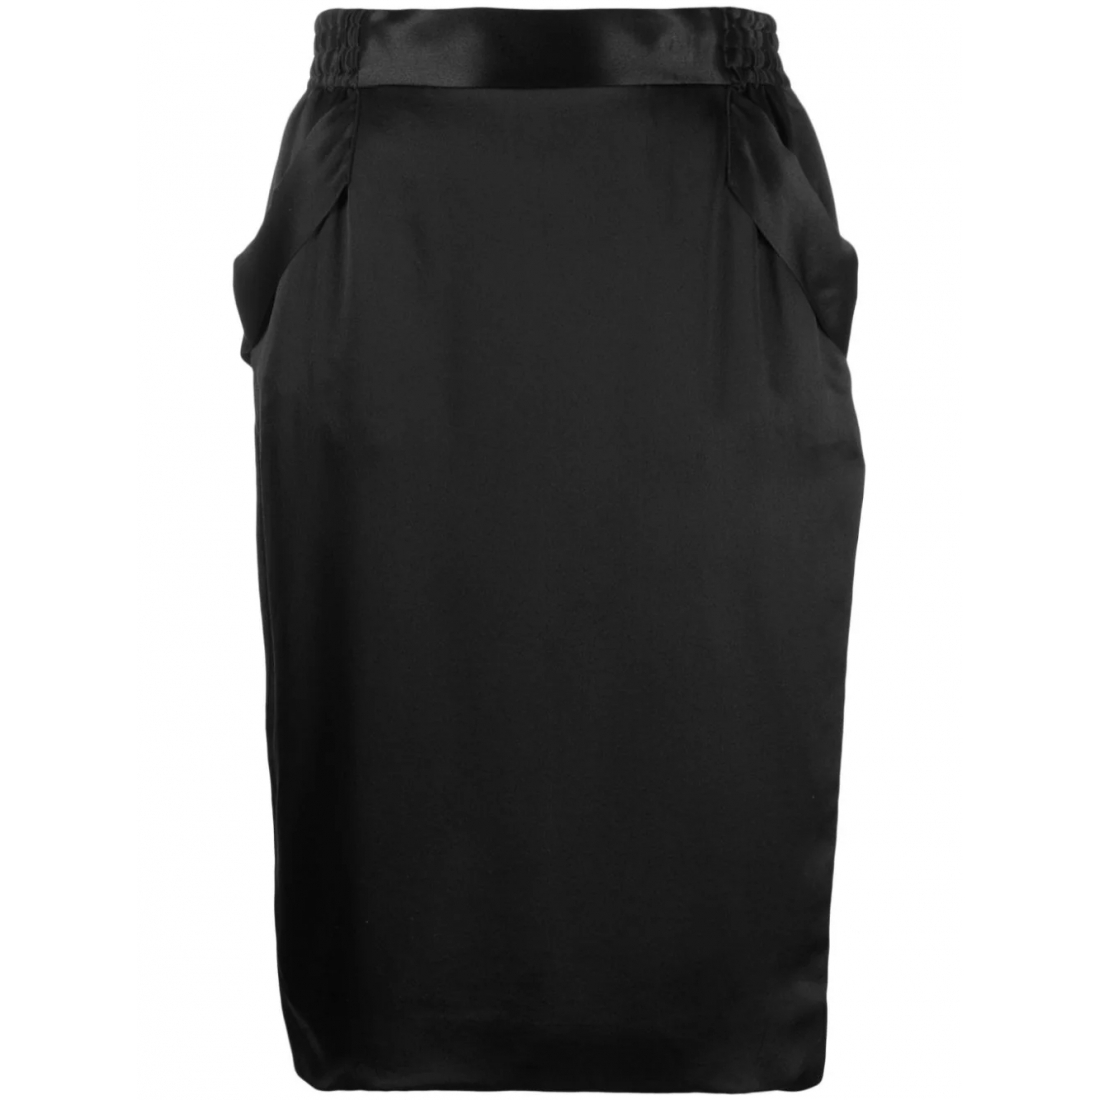 Women's Pencil skirt